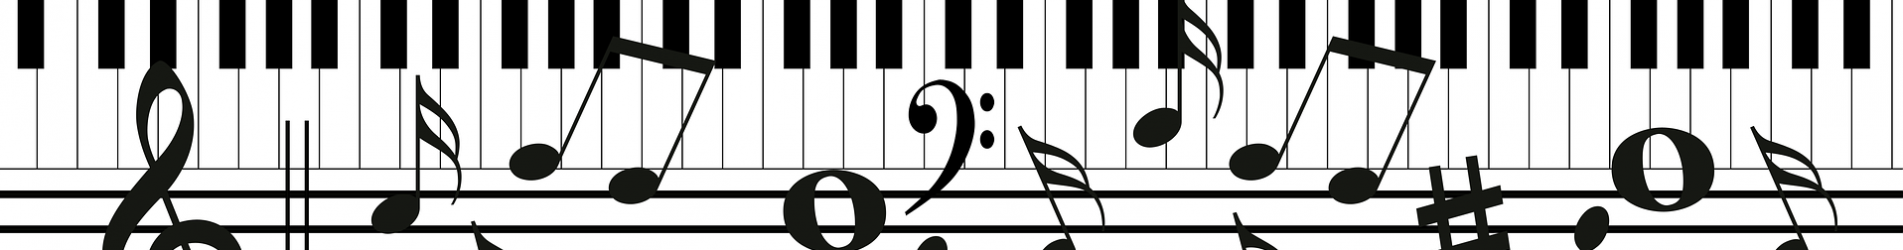 Klaviertasten und Noten (durcheinander)